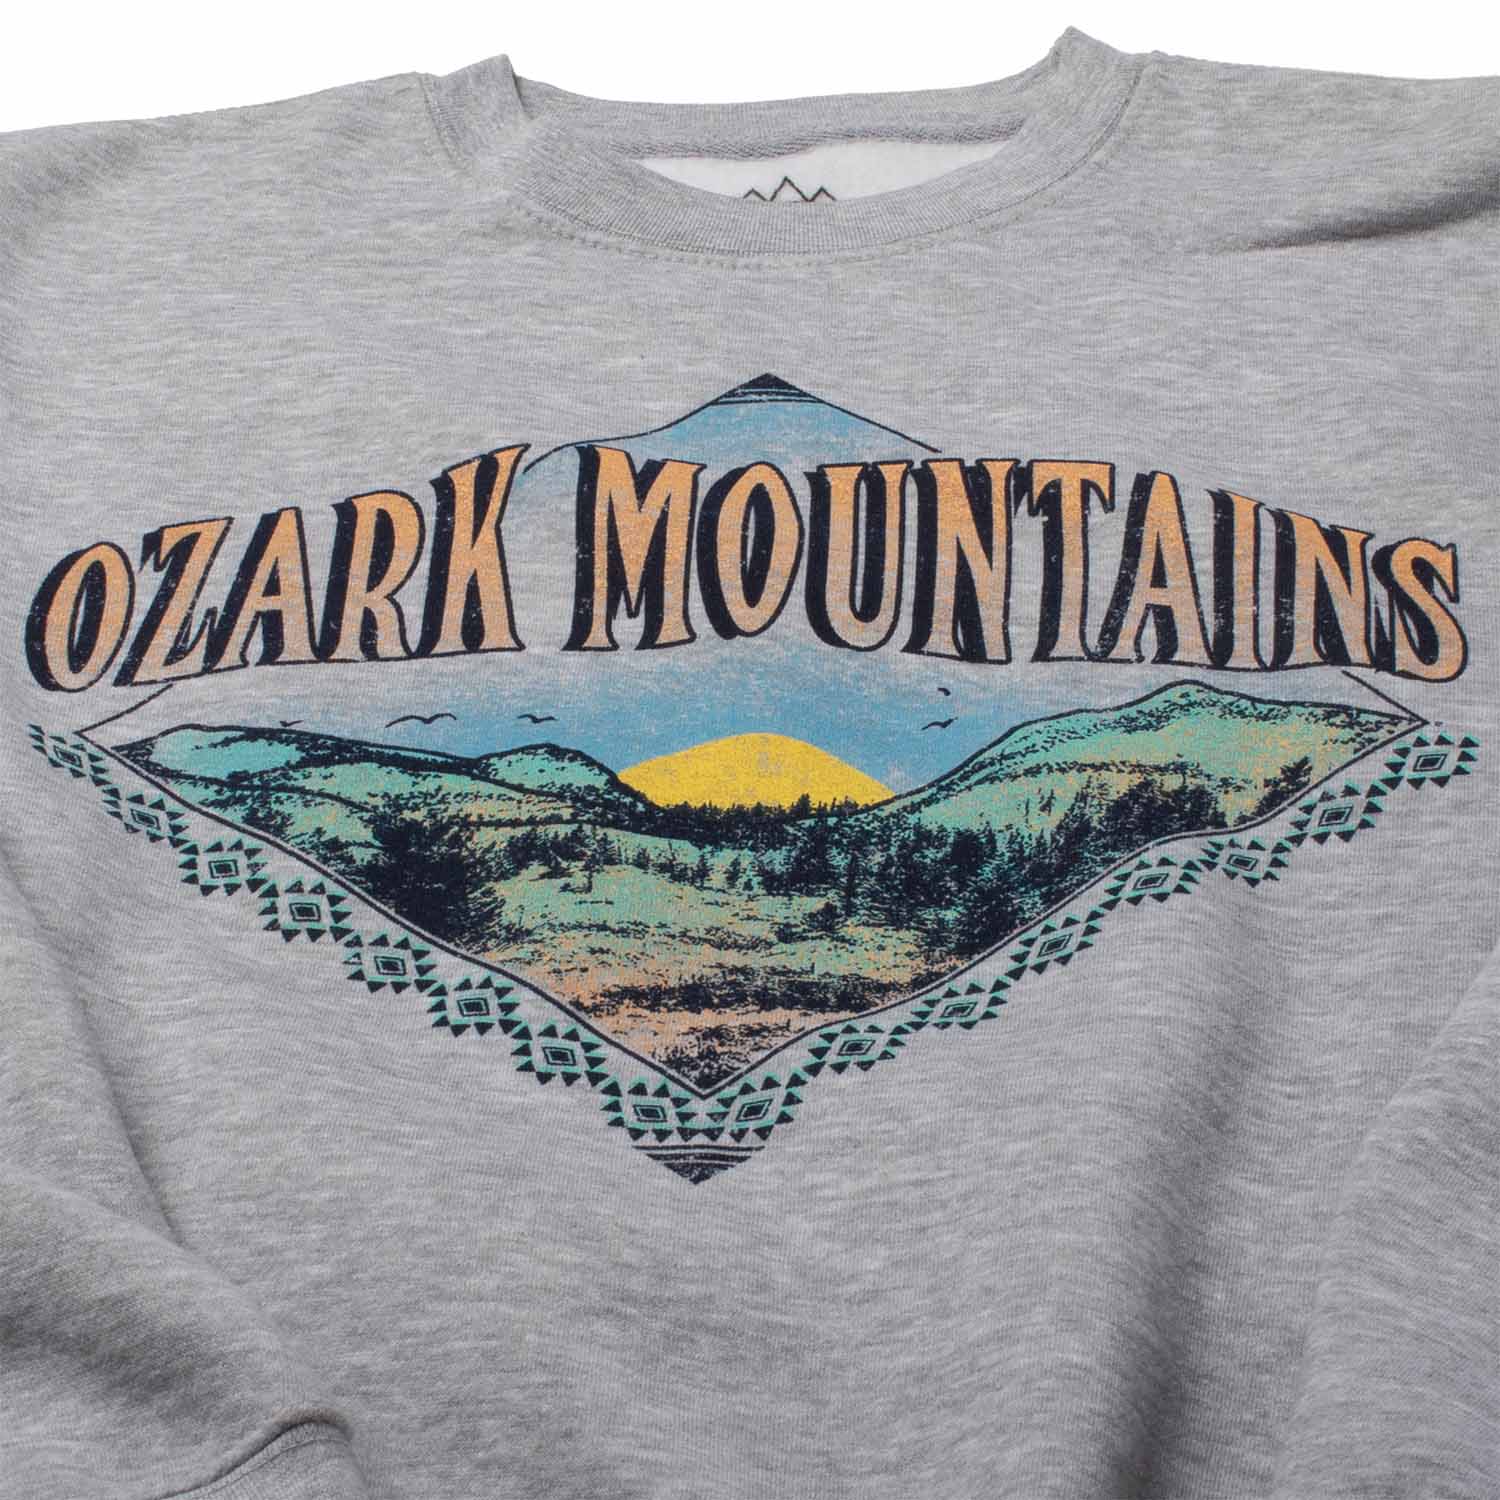 Ozark Mountains Sweatshirt